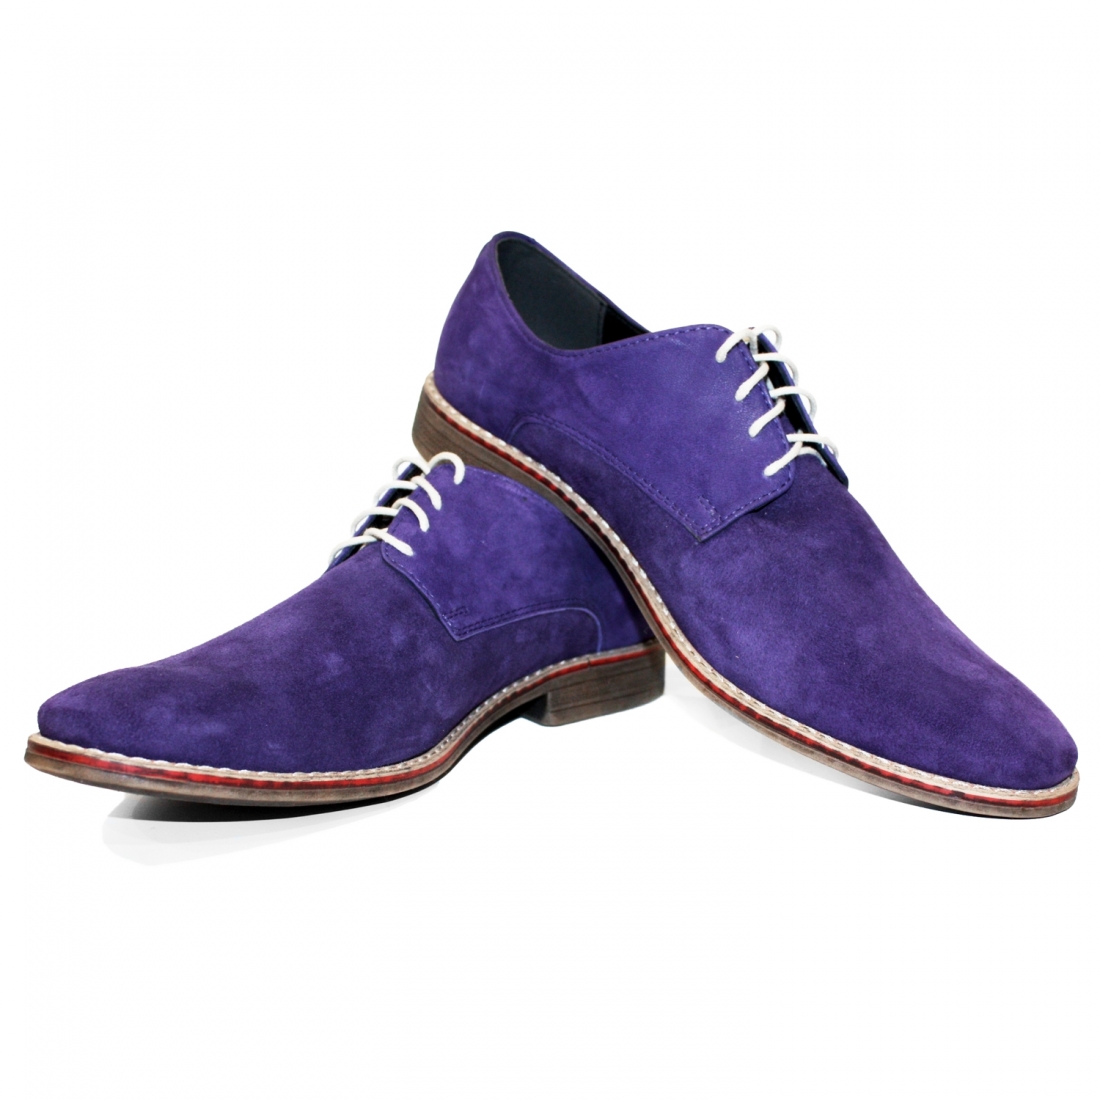 Modello Viollati - Chaussure Classique - Handmade Colorful Italian Leather Shoes